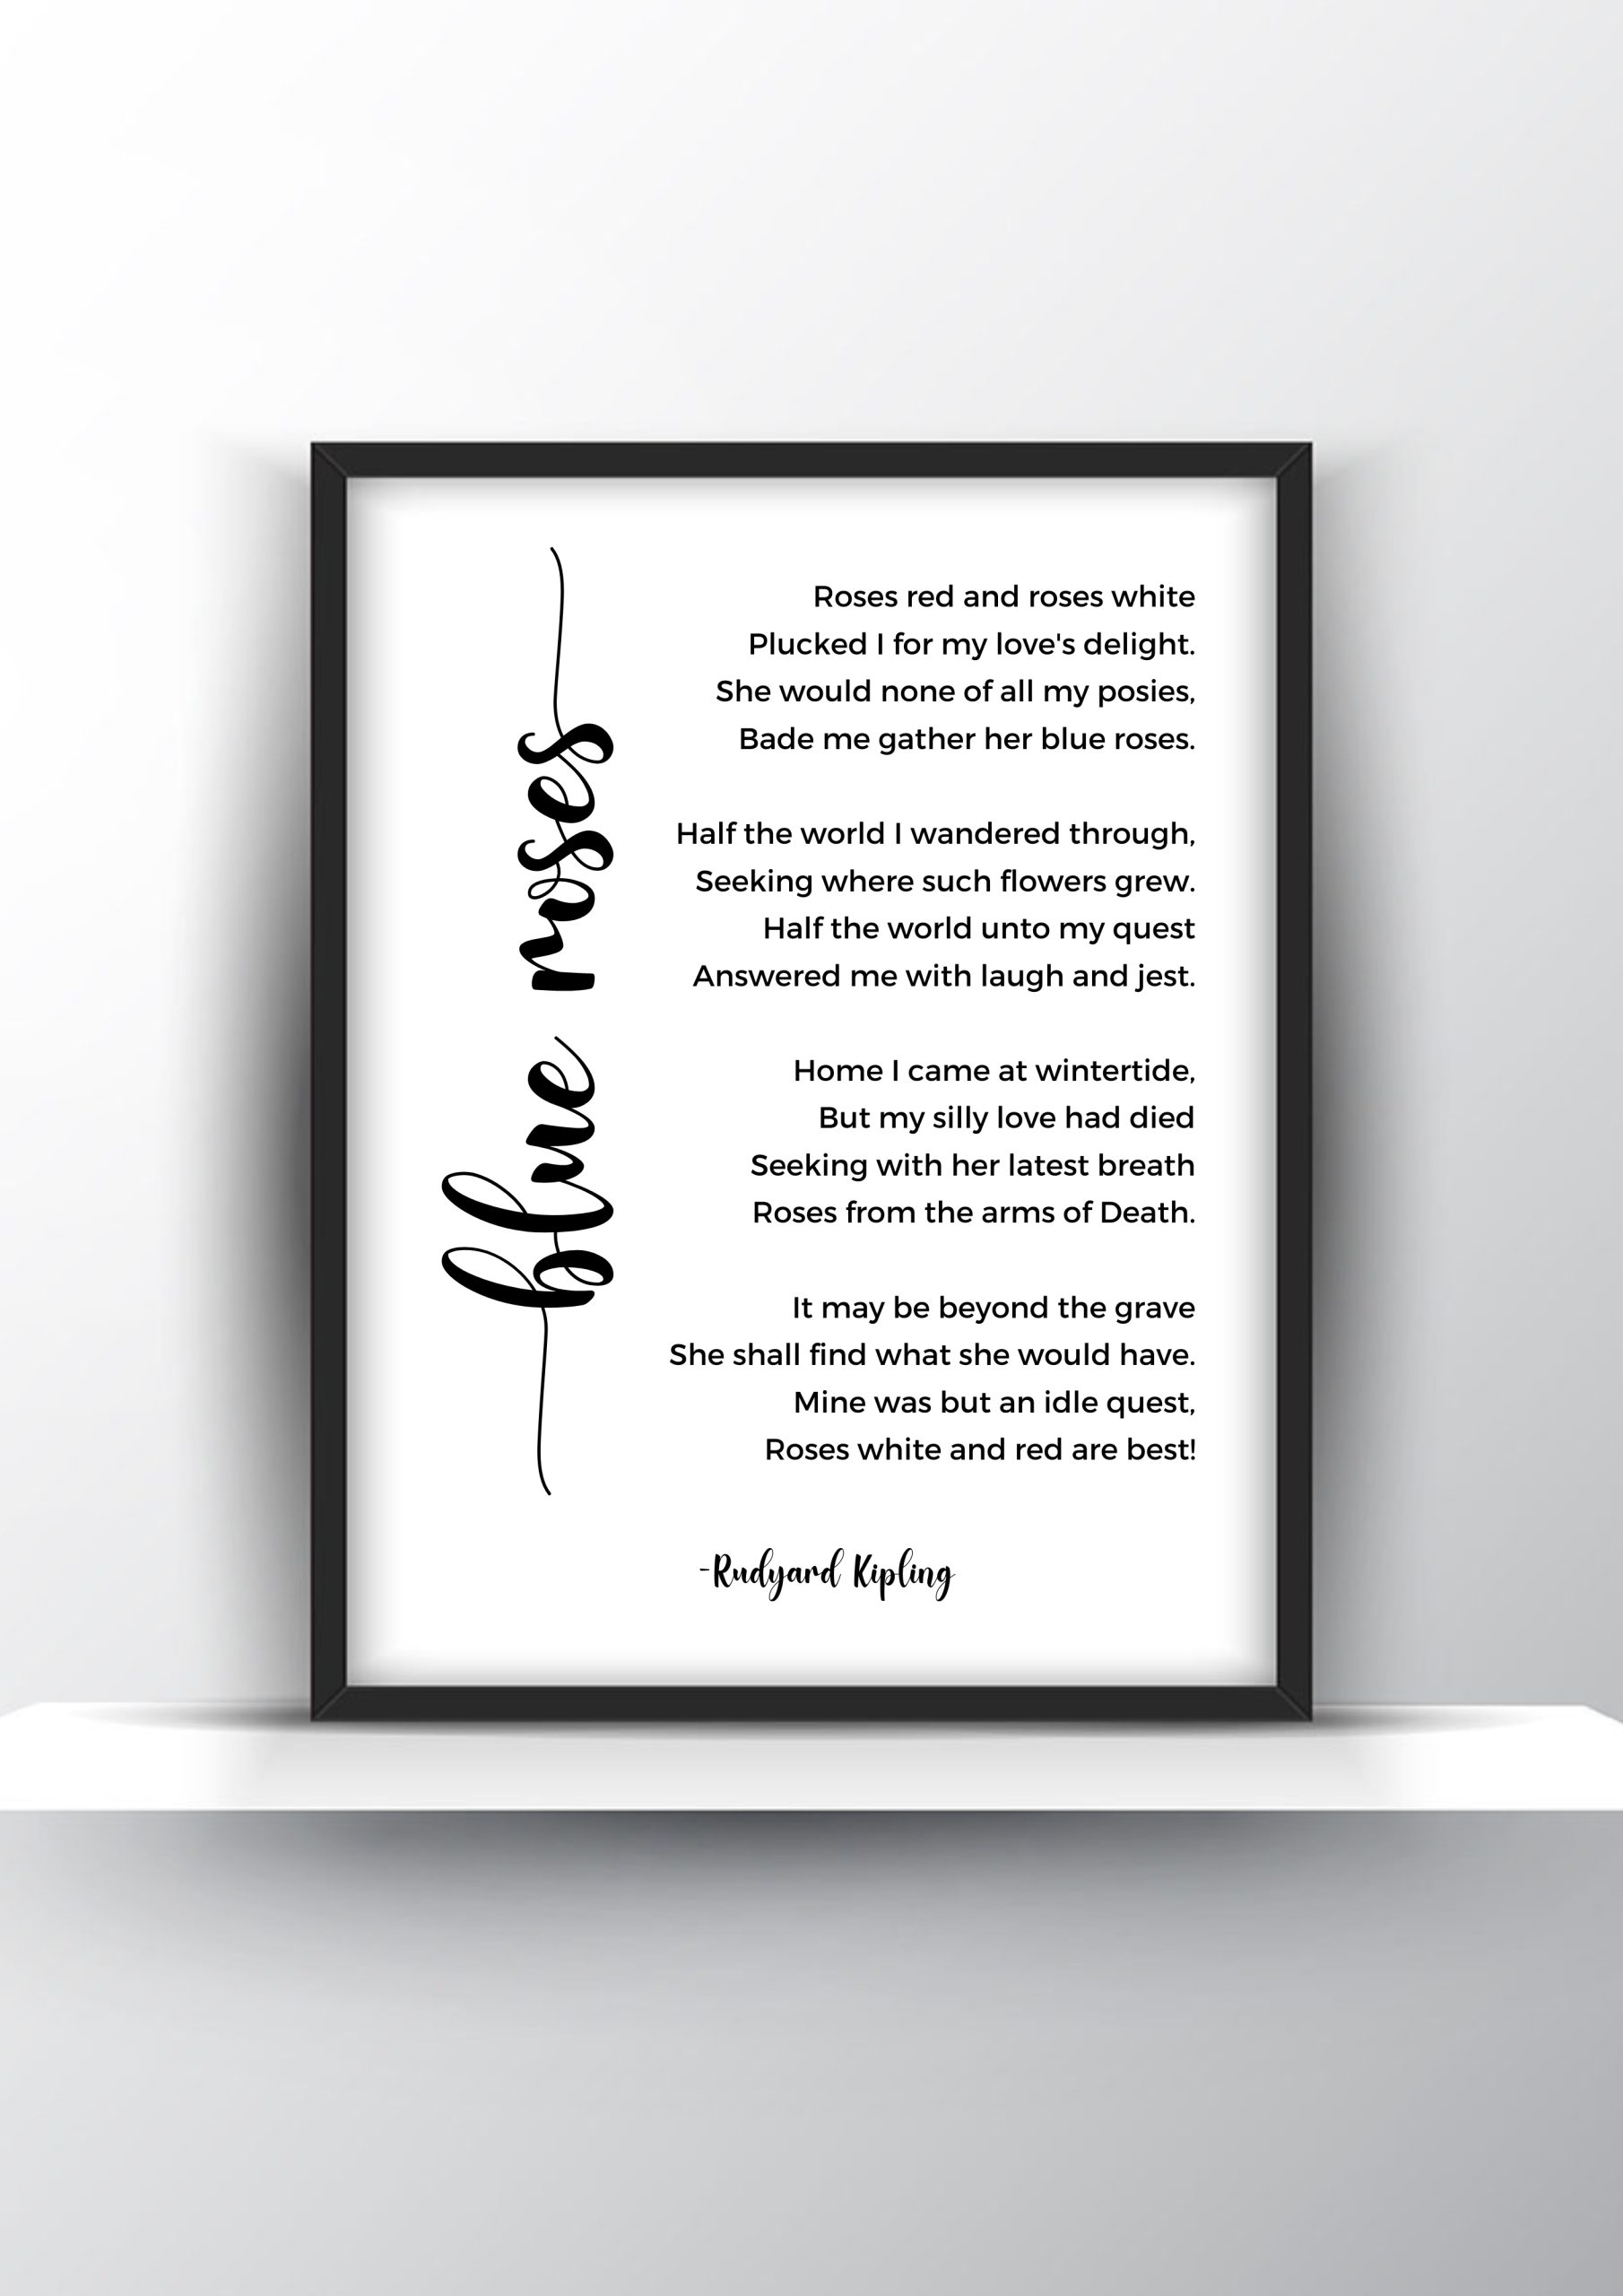 Blue Roses Poem by Rudyard Kipling